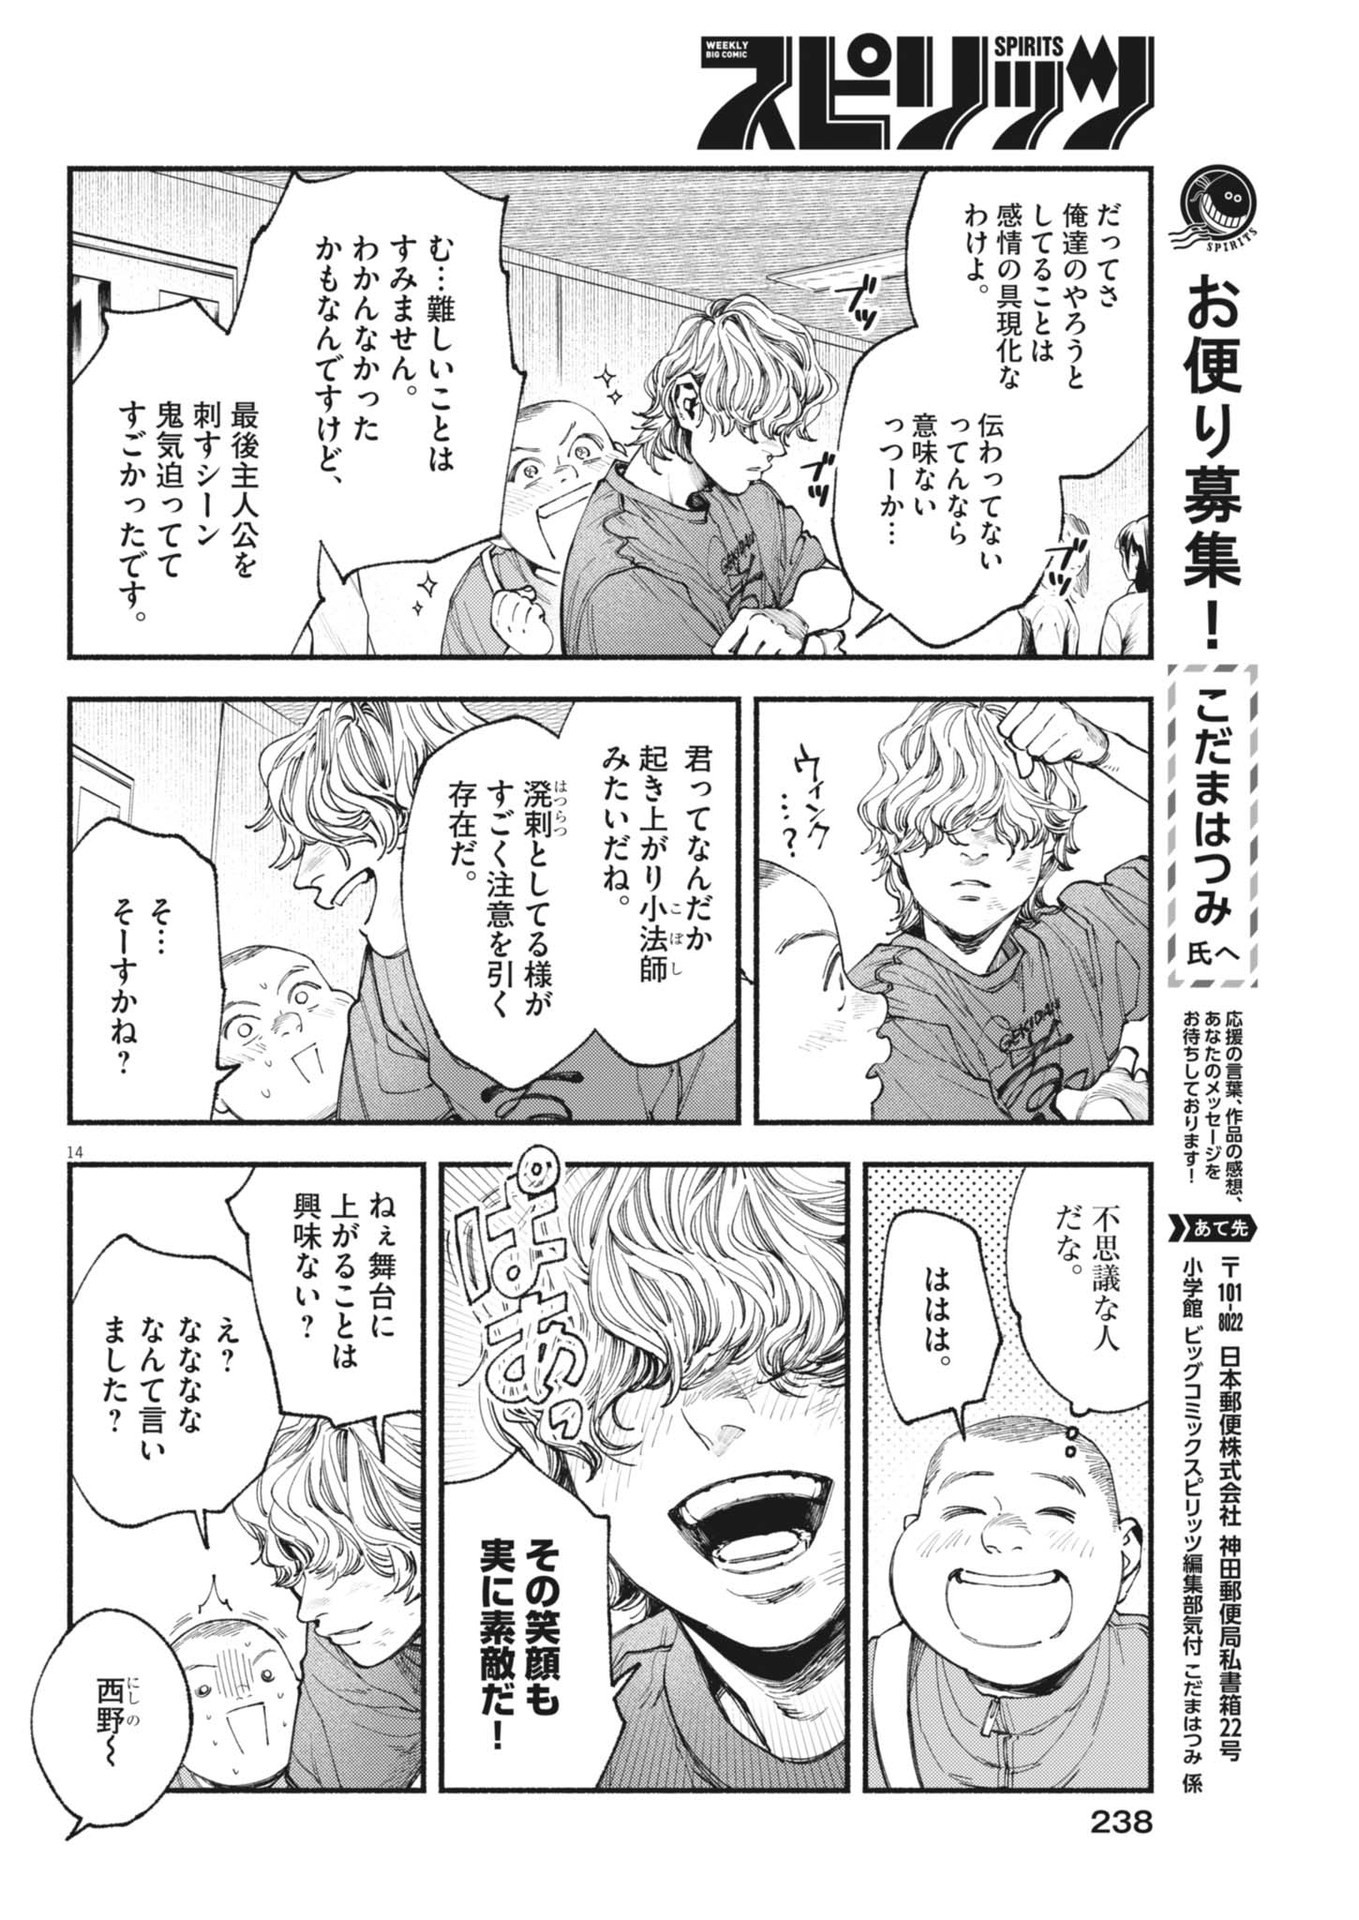 Konoyo wa Tatakau Kachi ga Aru  - Chapter 27 - Page 14